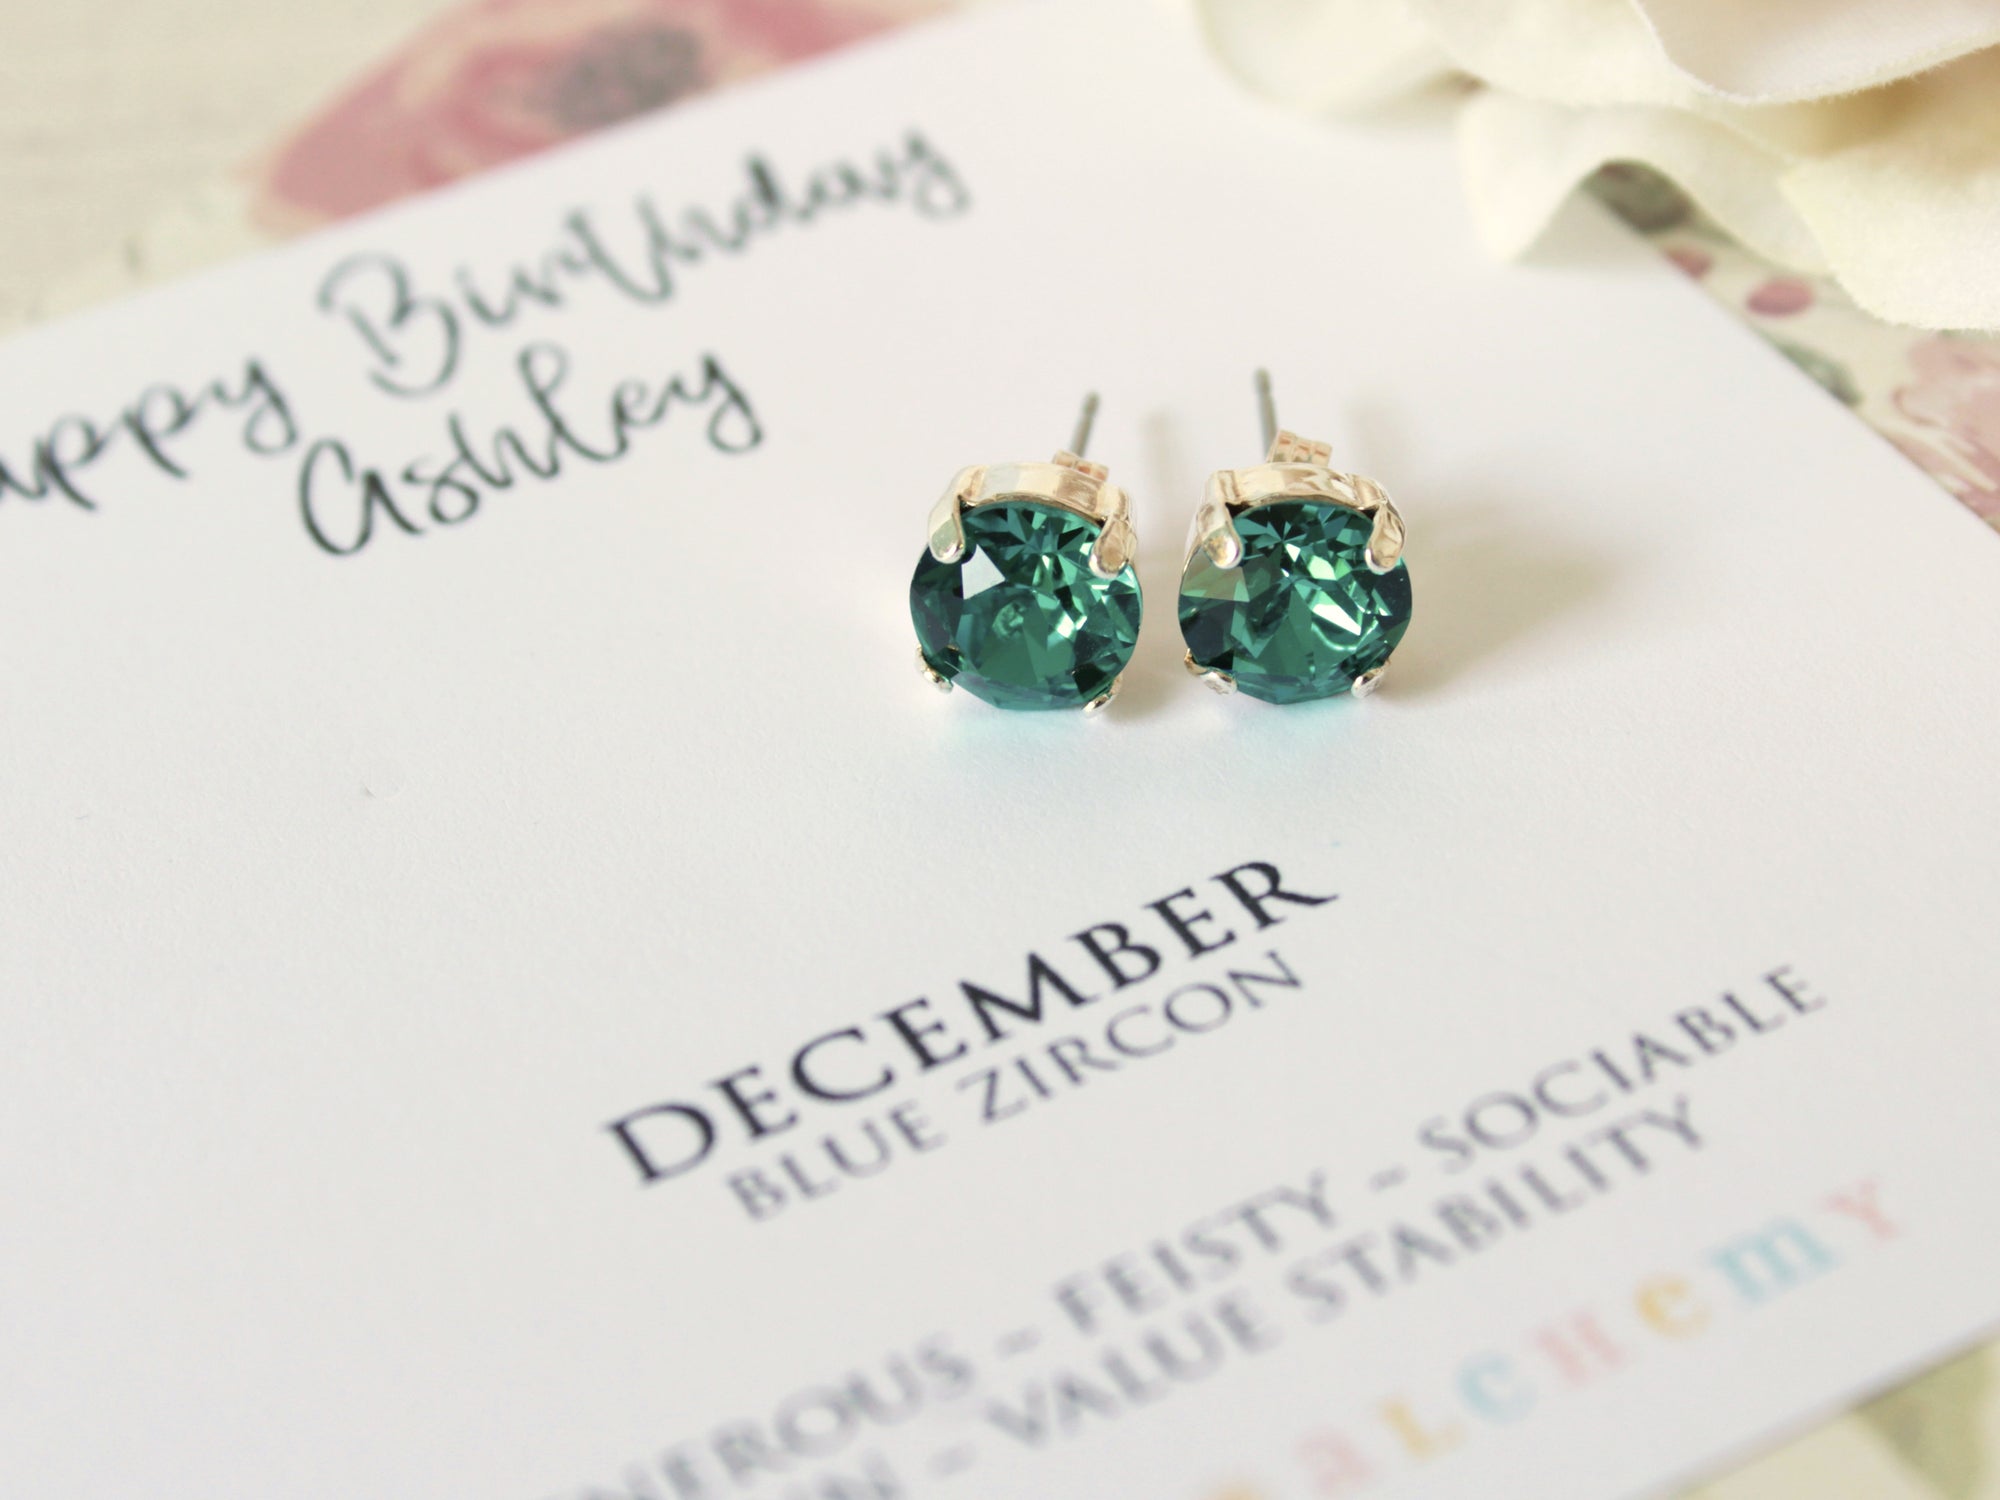 Personalized December Birthstone Stud Earrings in Blue Zircon